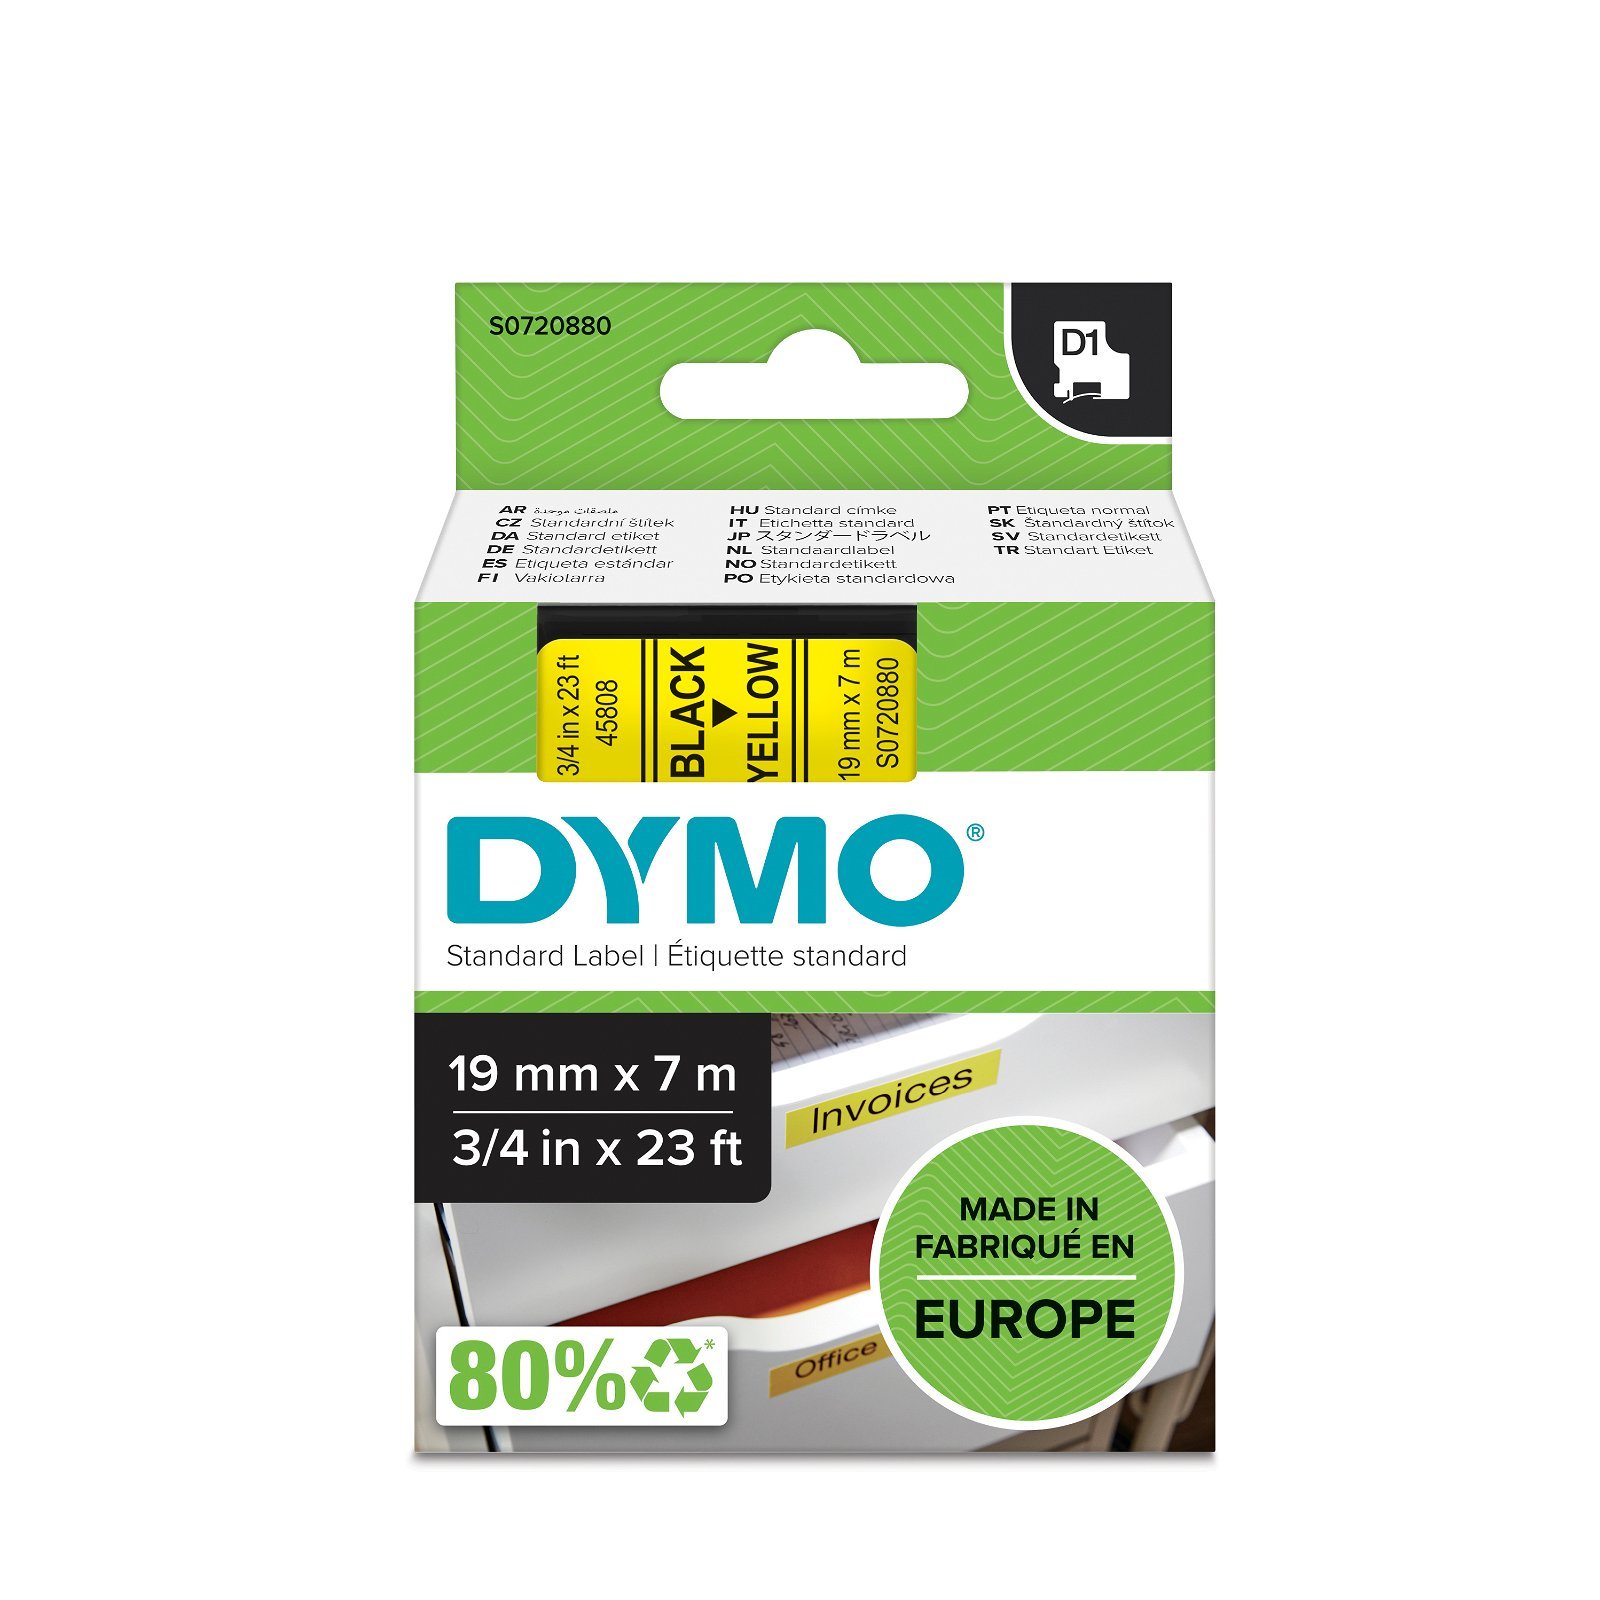 Dymo D1 standard tapekasette 19 mm sort;gul Polyester